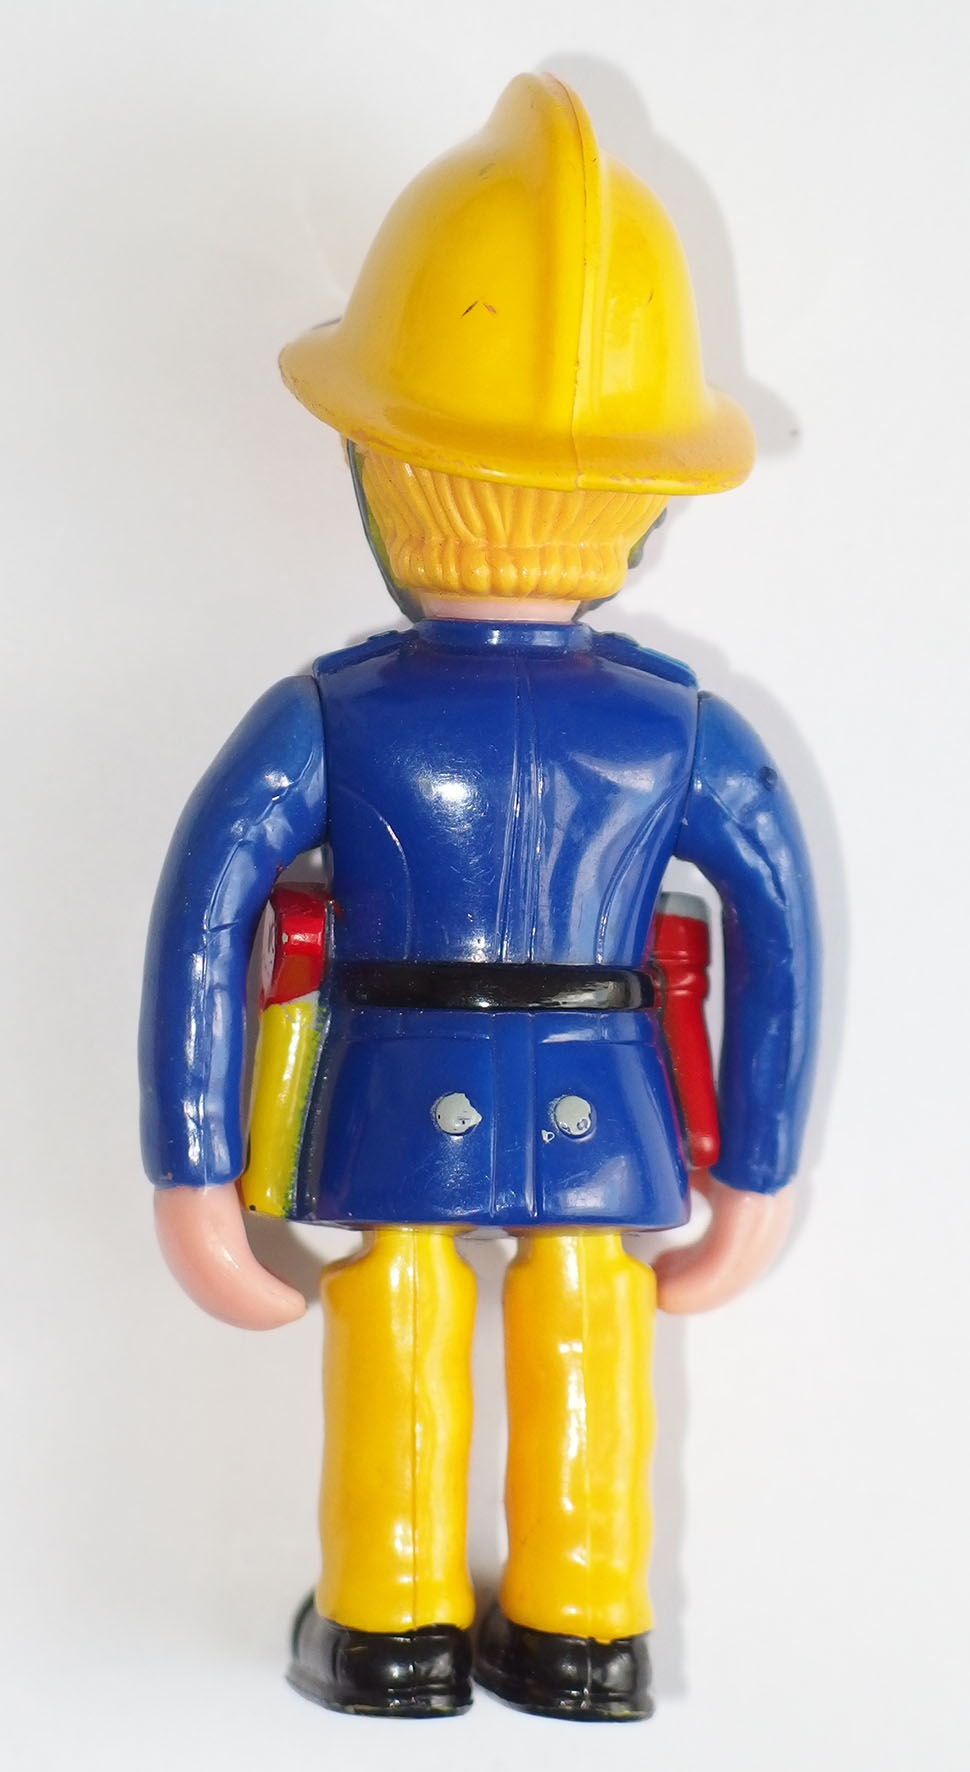 penny figur spielfigur von feuerwehrmann fireman sam uk  ebay